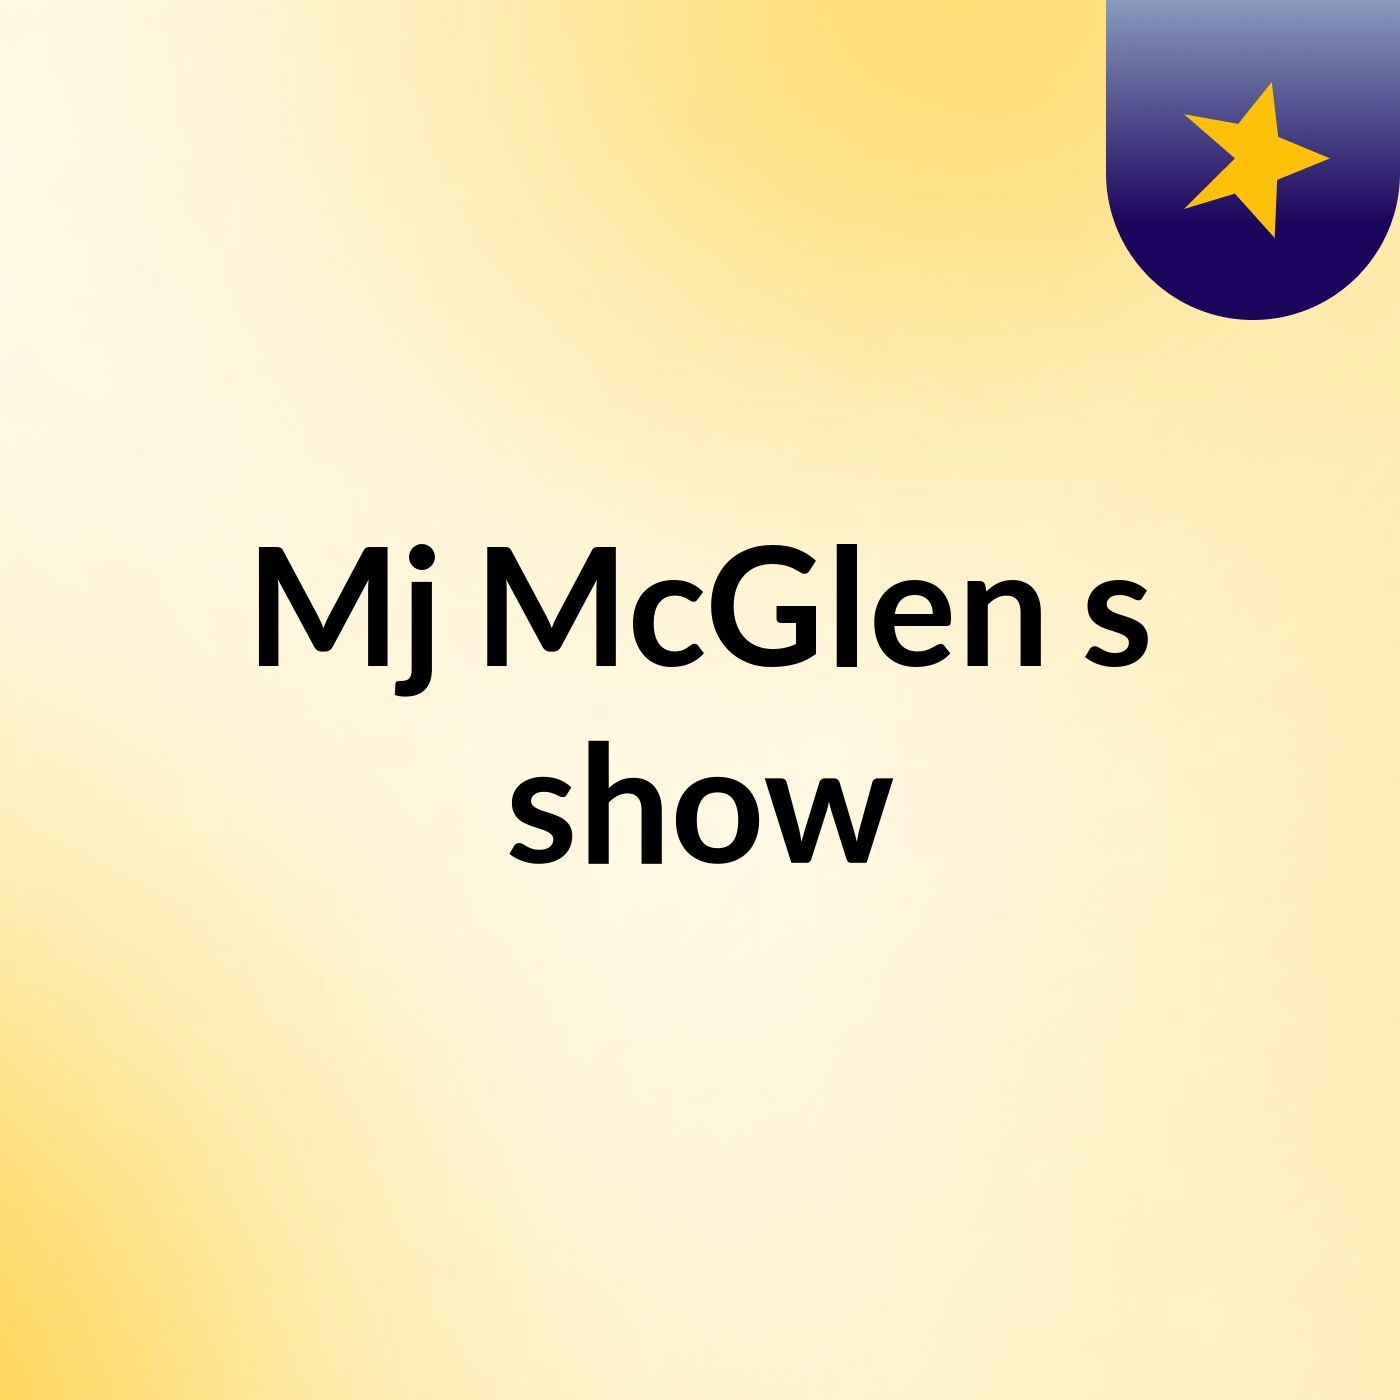 Episode 10 - Mj McGlen's show